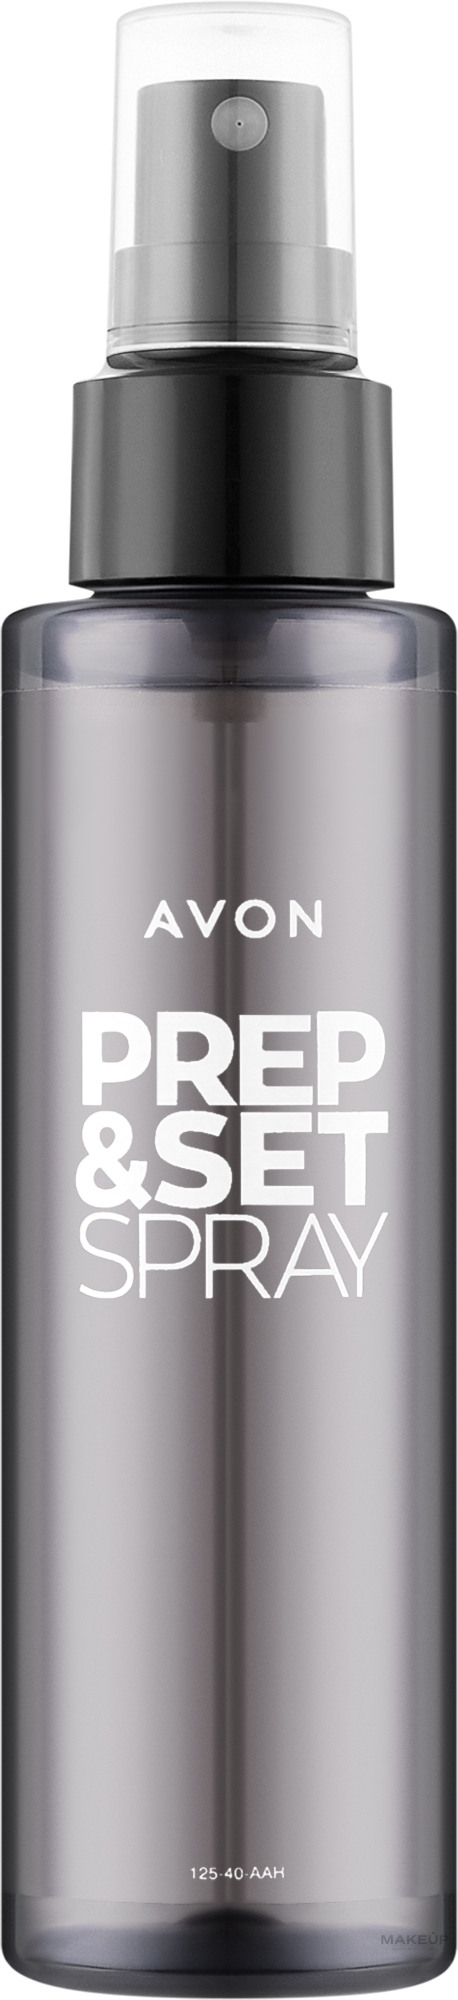 Prep & Set Makeup Spray - Avon Prep and Set Spray — photo 125 ml